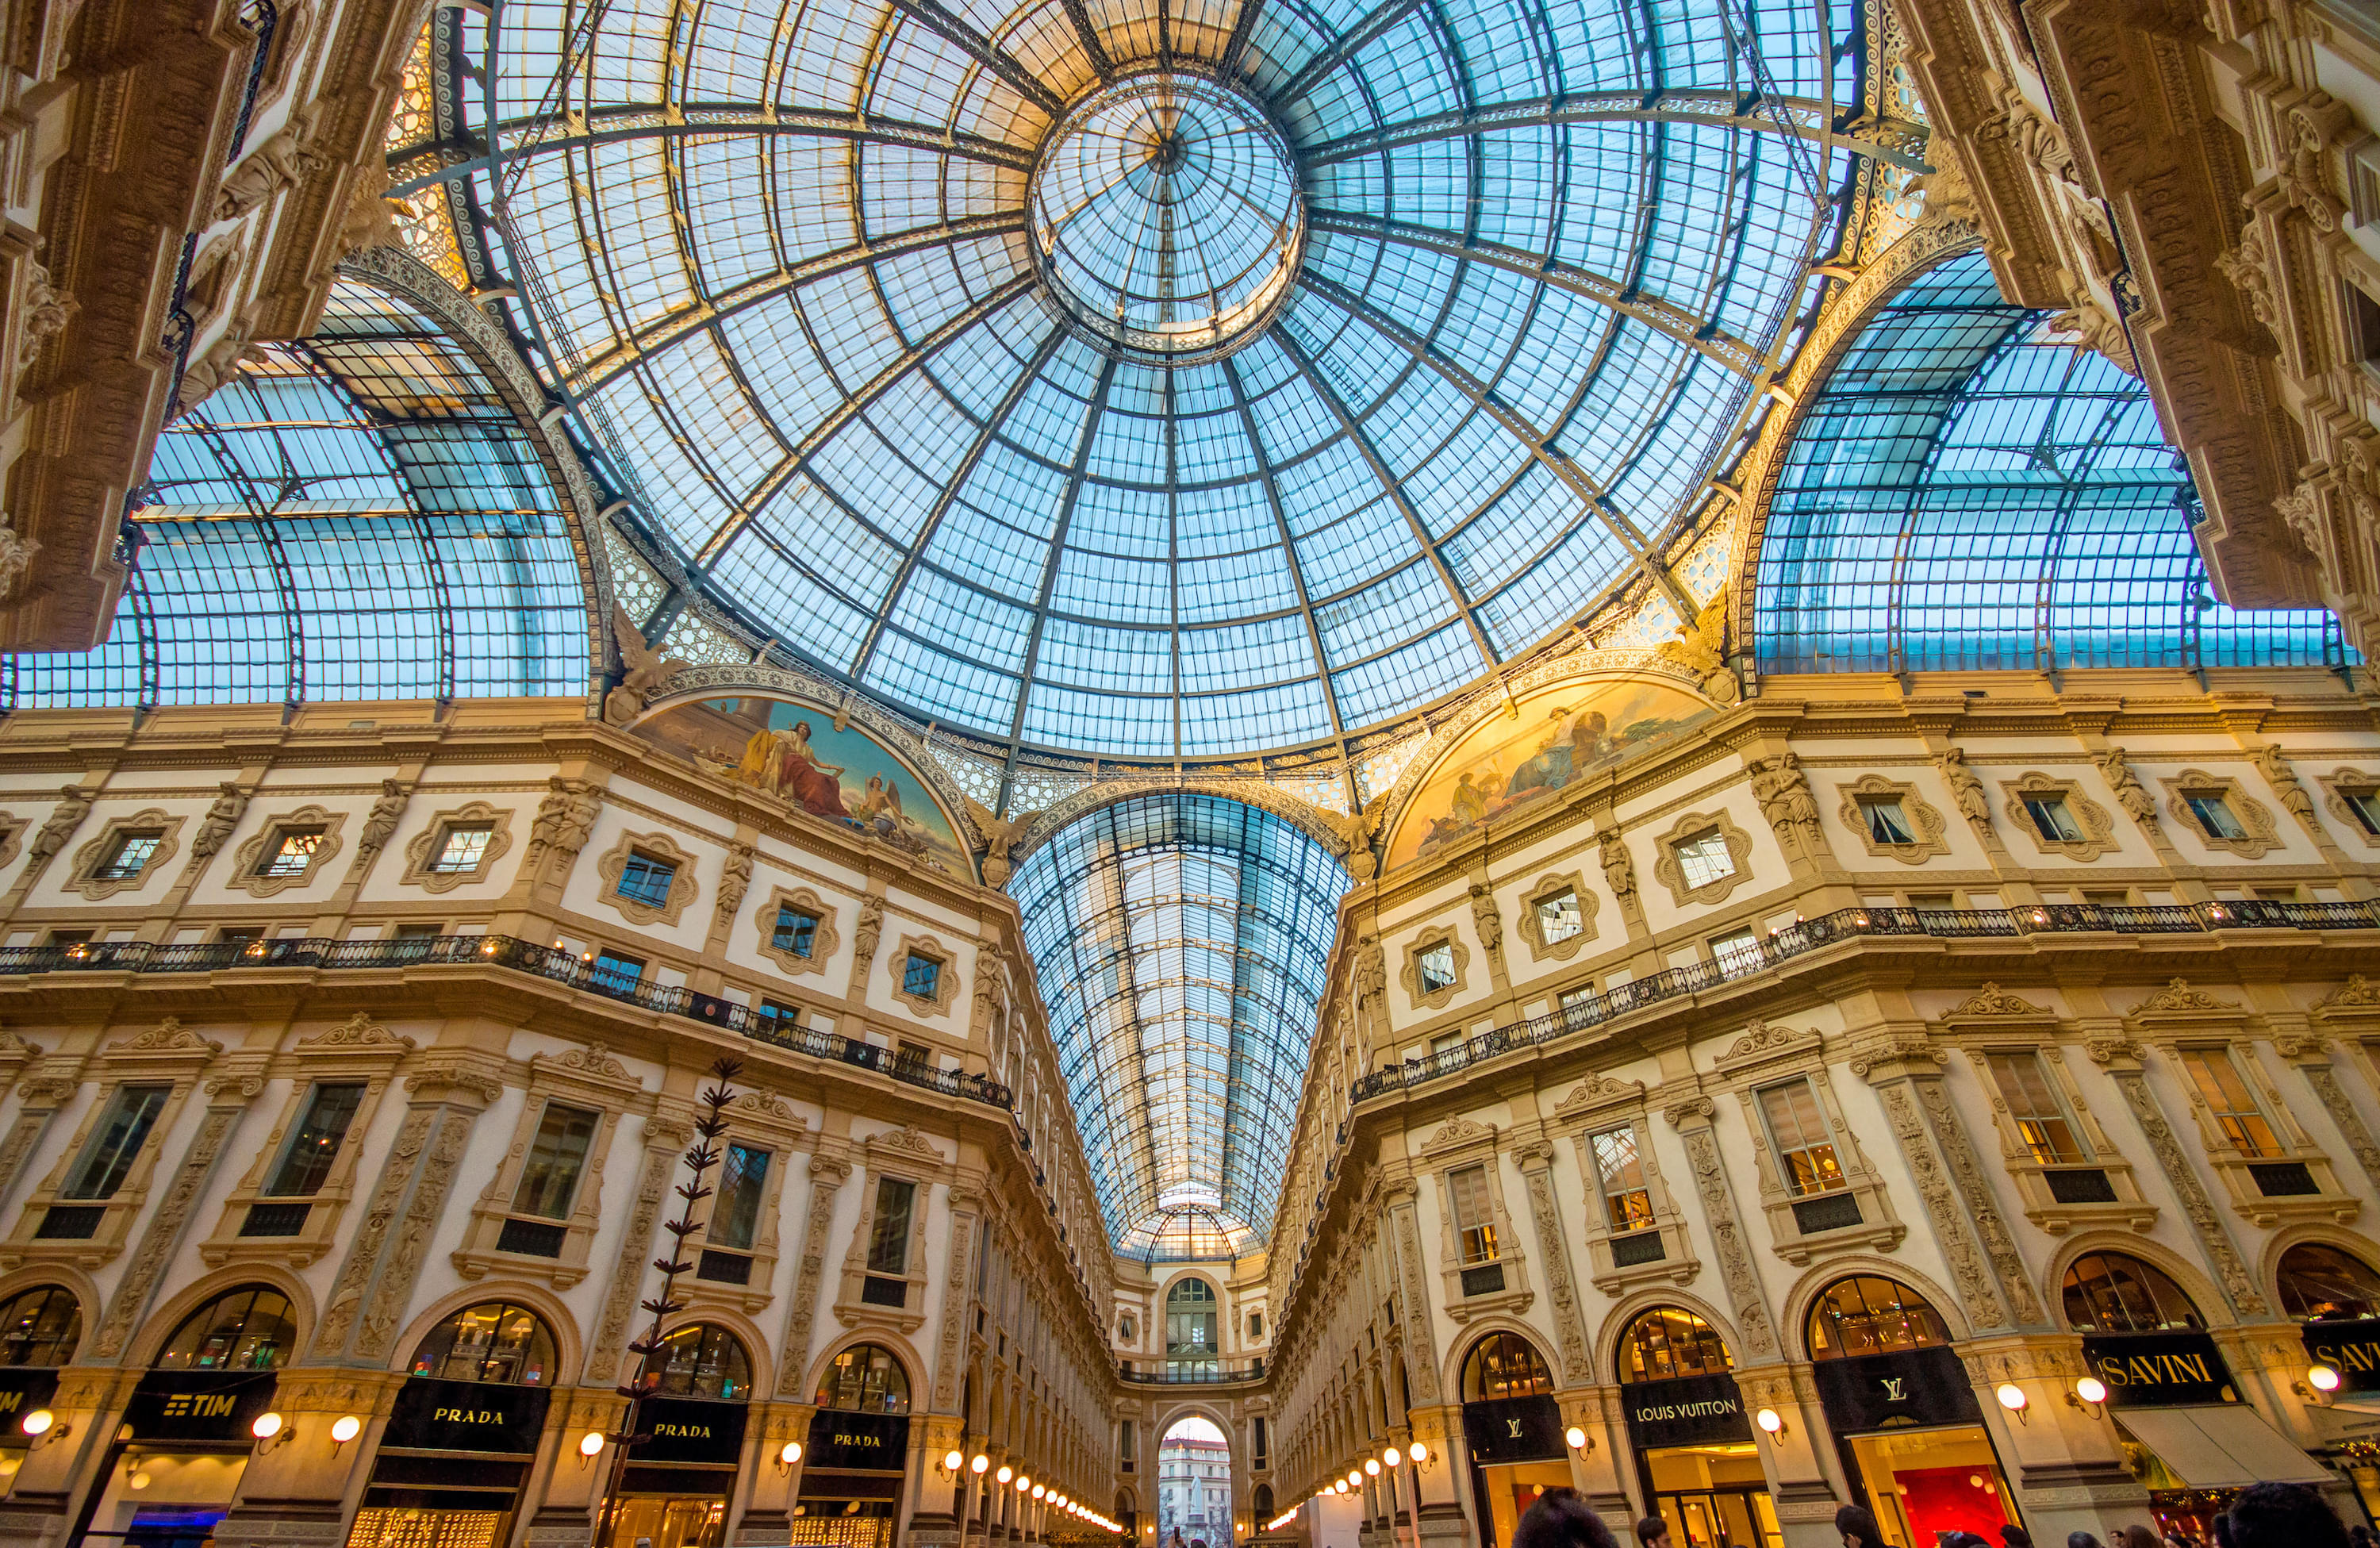 Galleria Vittorio Emanuele Ii